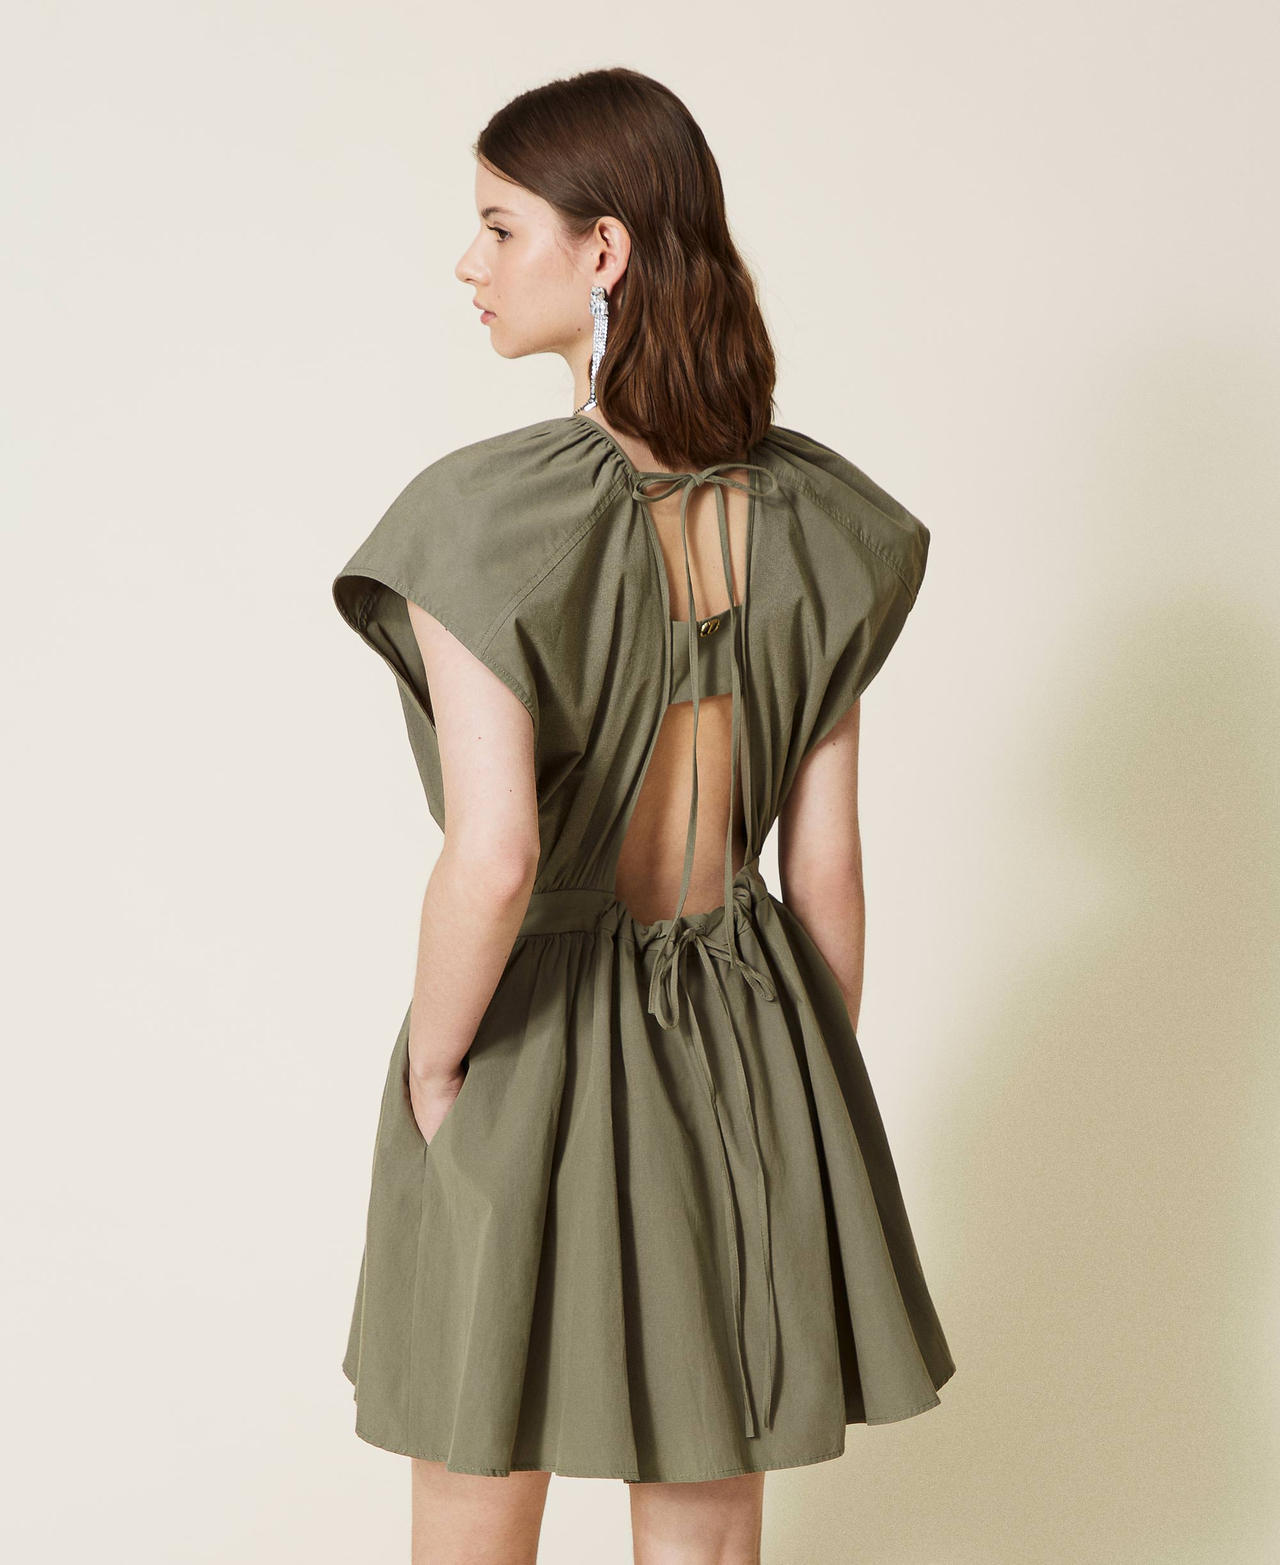 Robe en popeline avec fronce Vert « Camouflage » Femme 221TT2080-03